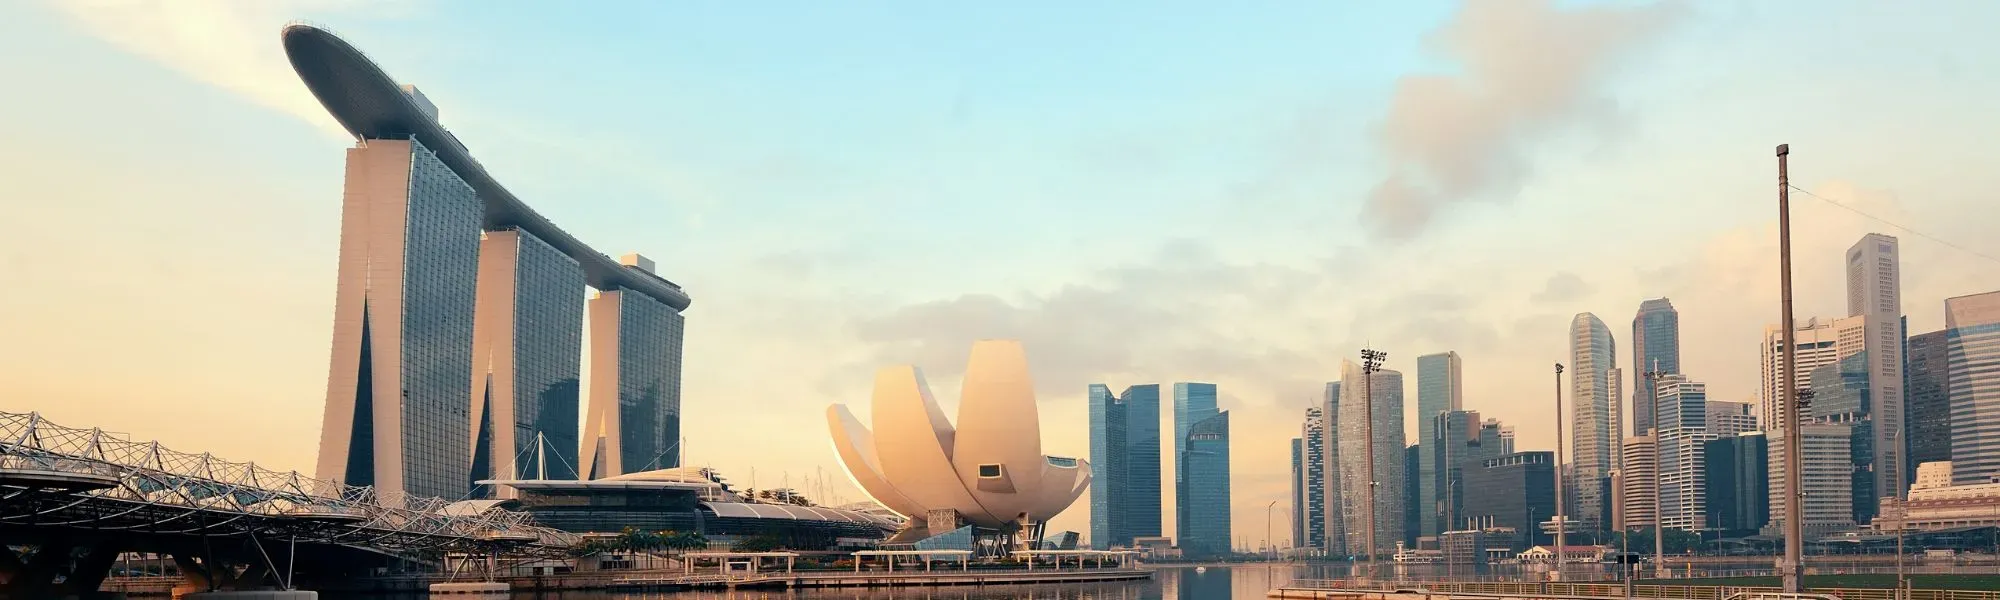 Sea Asia - Singapore